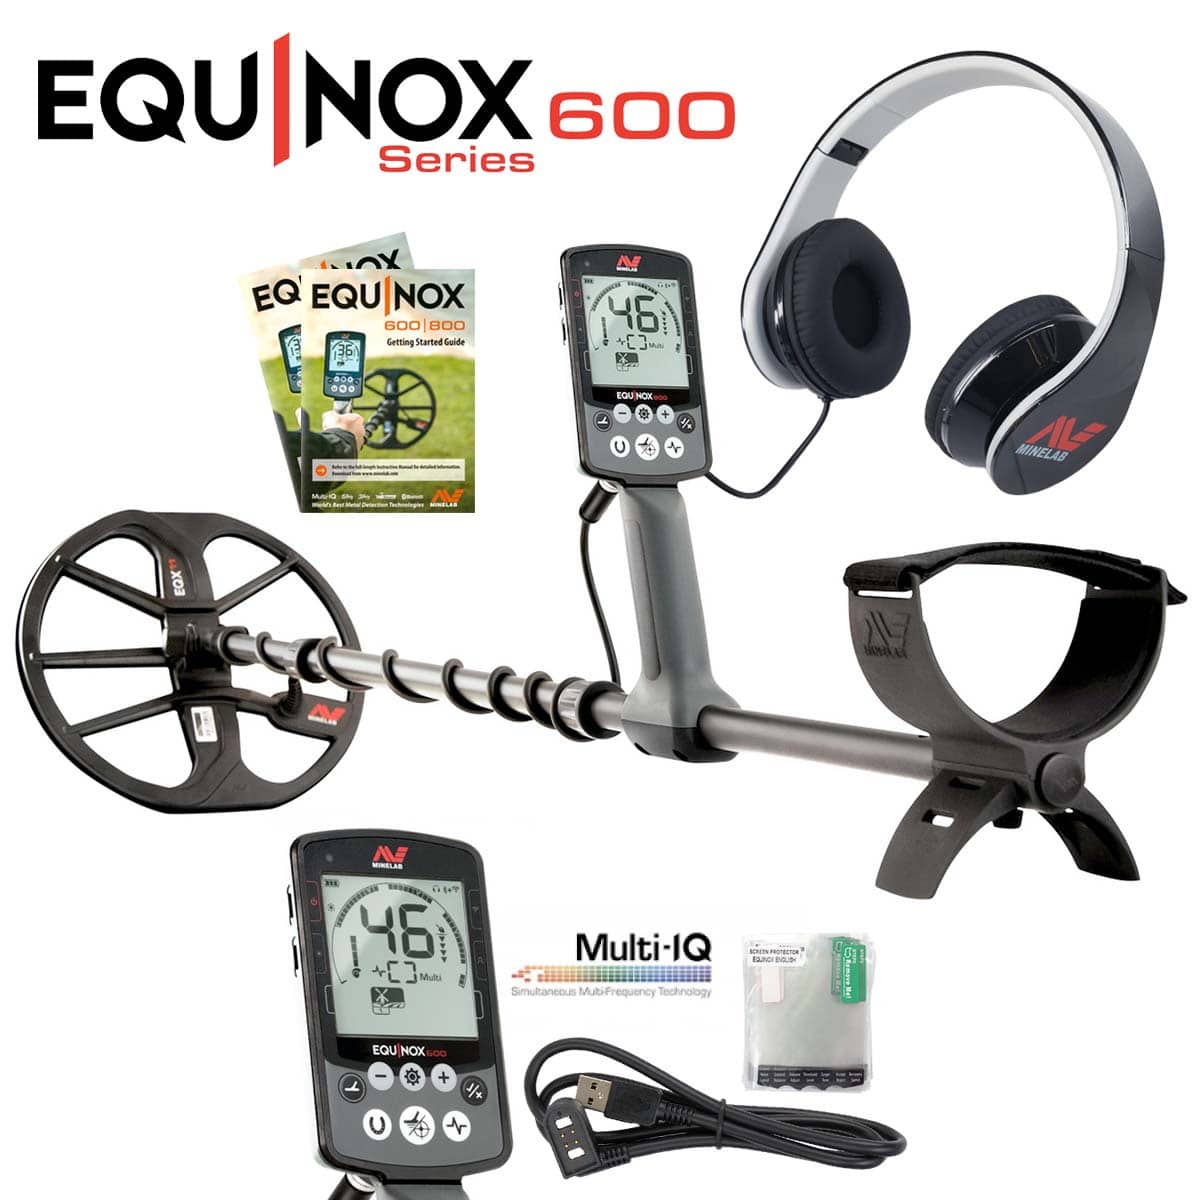 Minelab Equinox 600 multi frecuencia detector de metales kit completo 